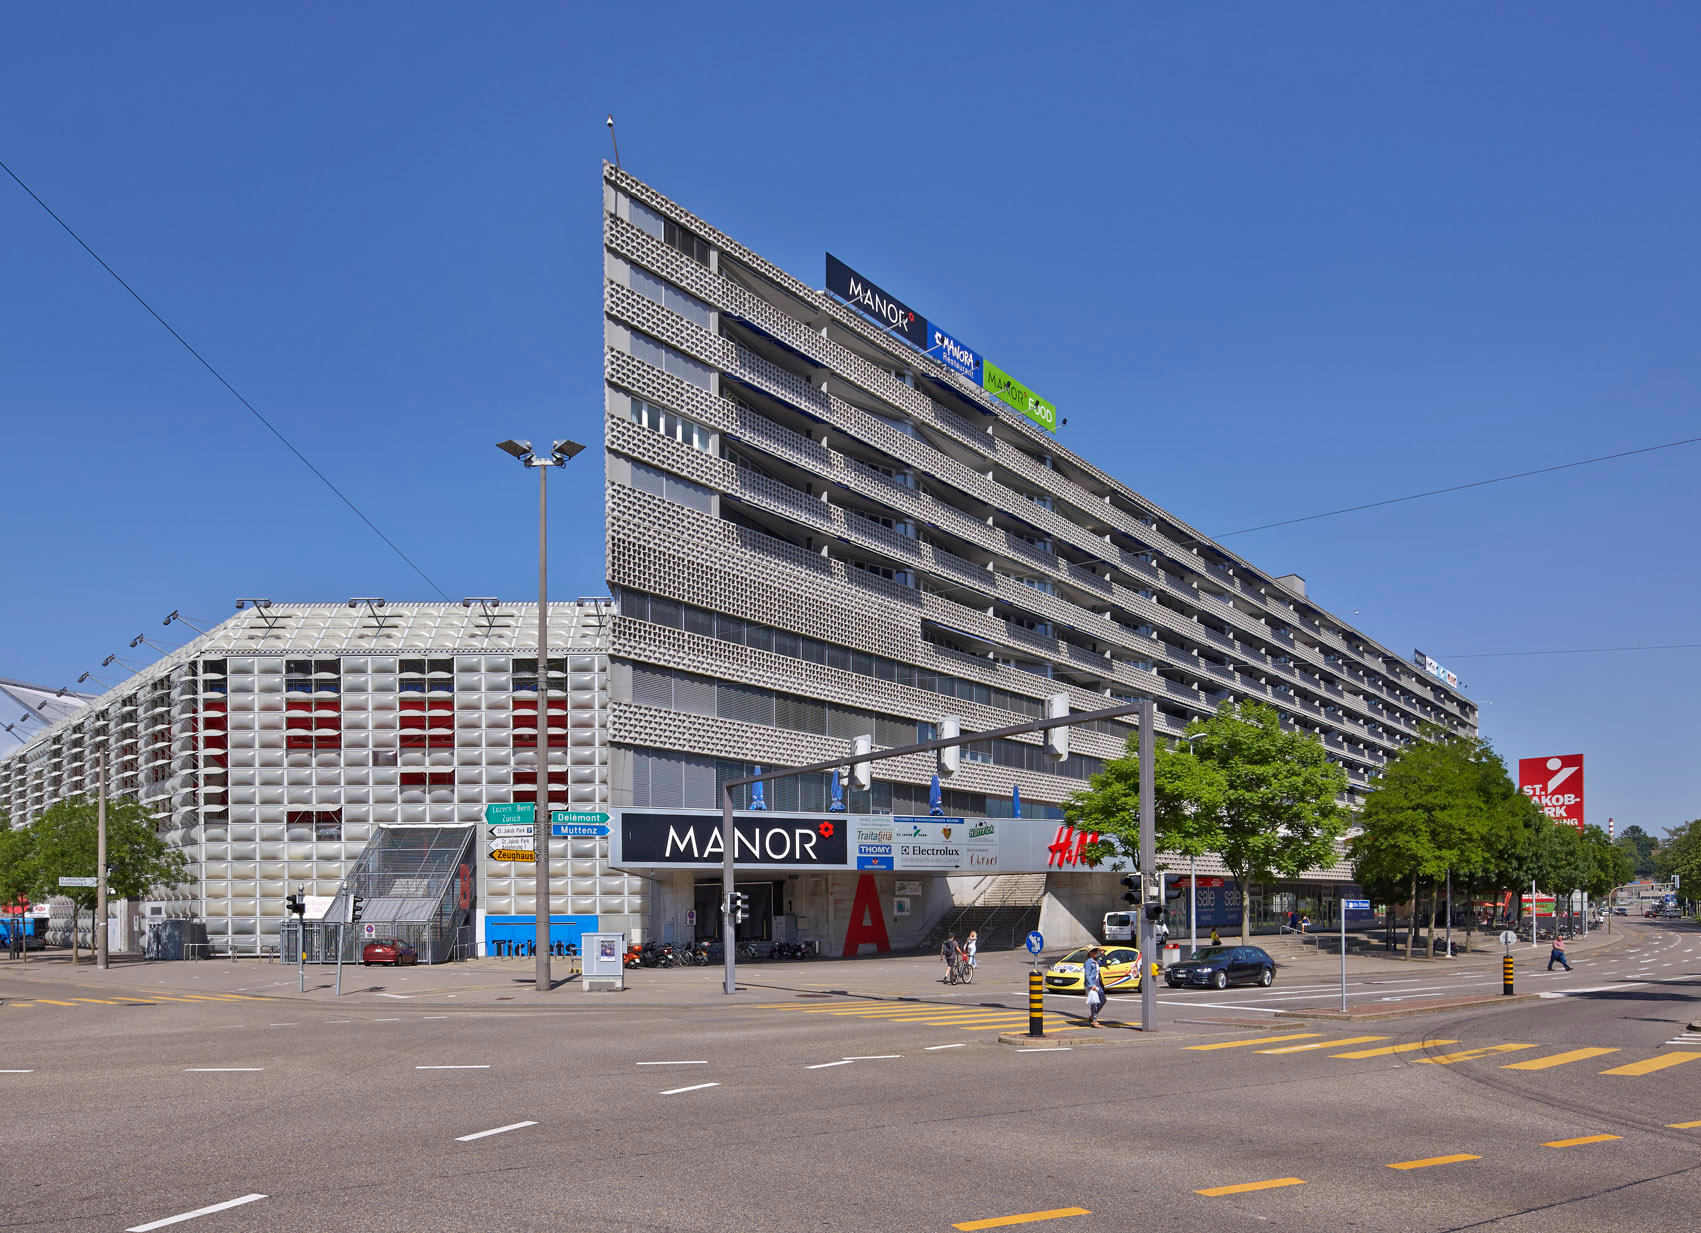 Shopping Center St. Jakob-Park